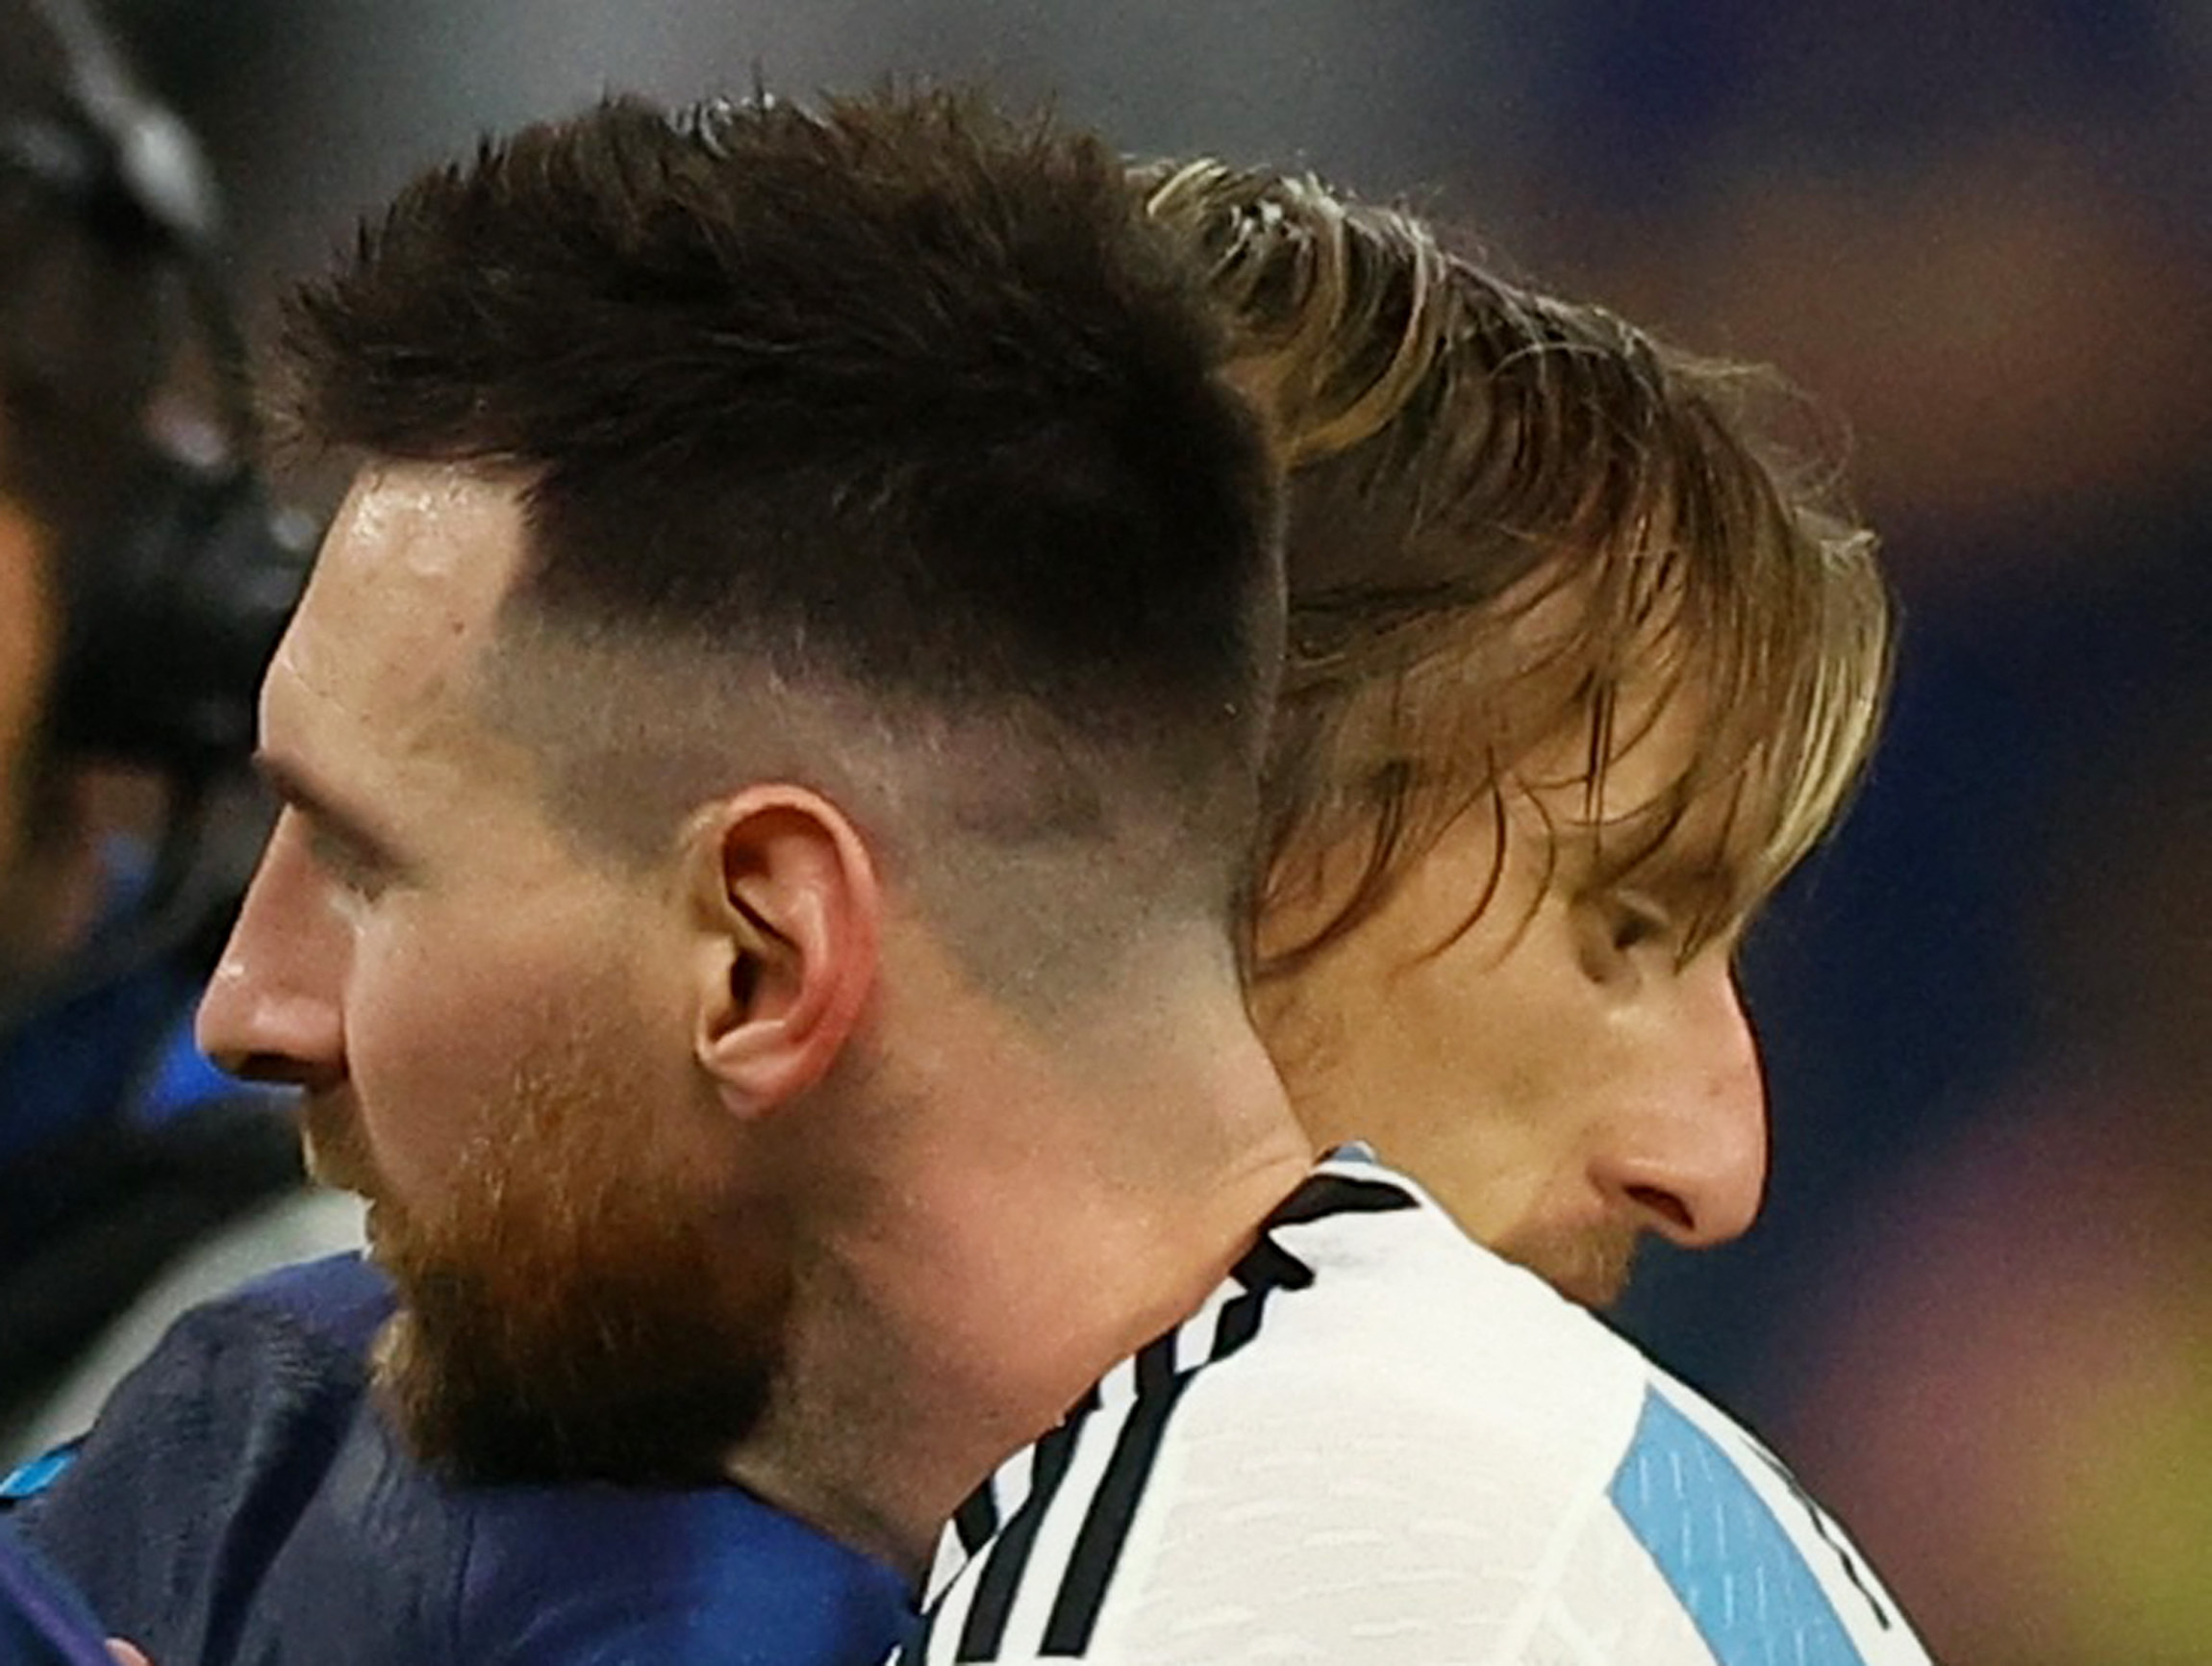 아르헨티나의 리오넬 메시가 경기 후 크로아티아의 루카 모드리치를 껴안고 있다.